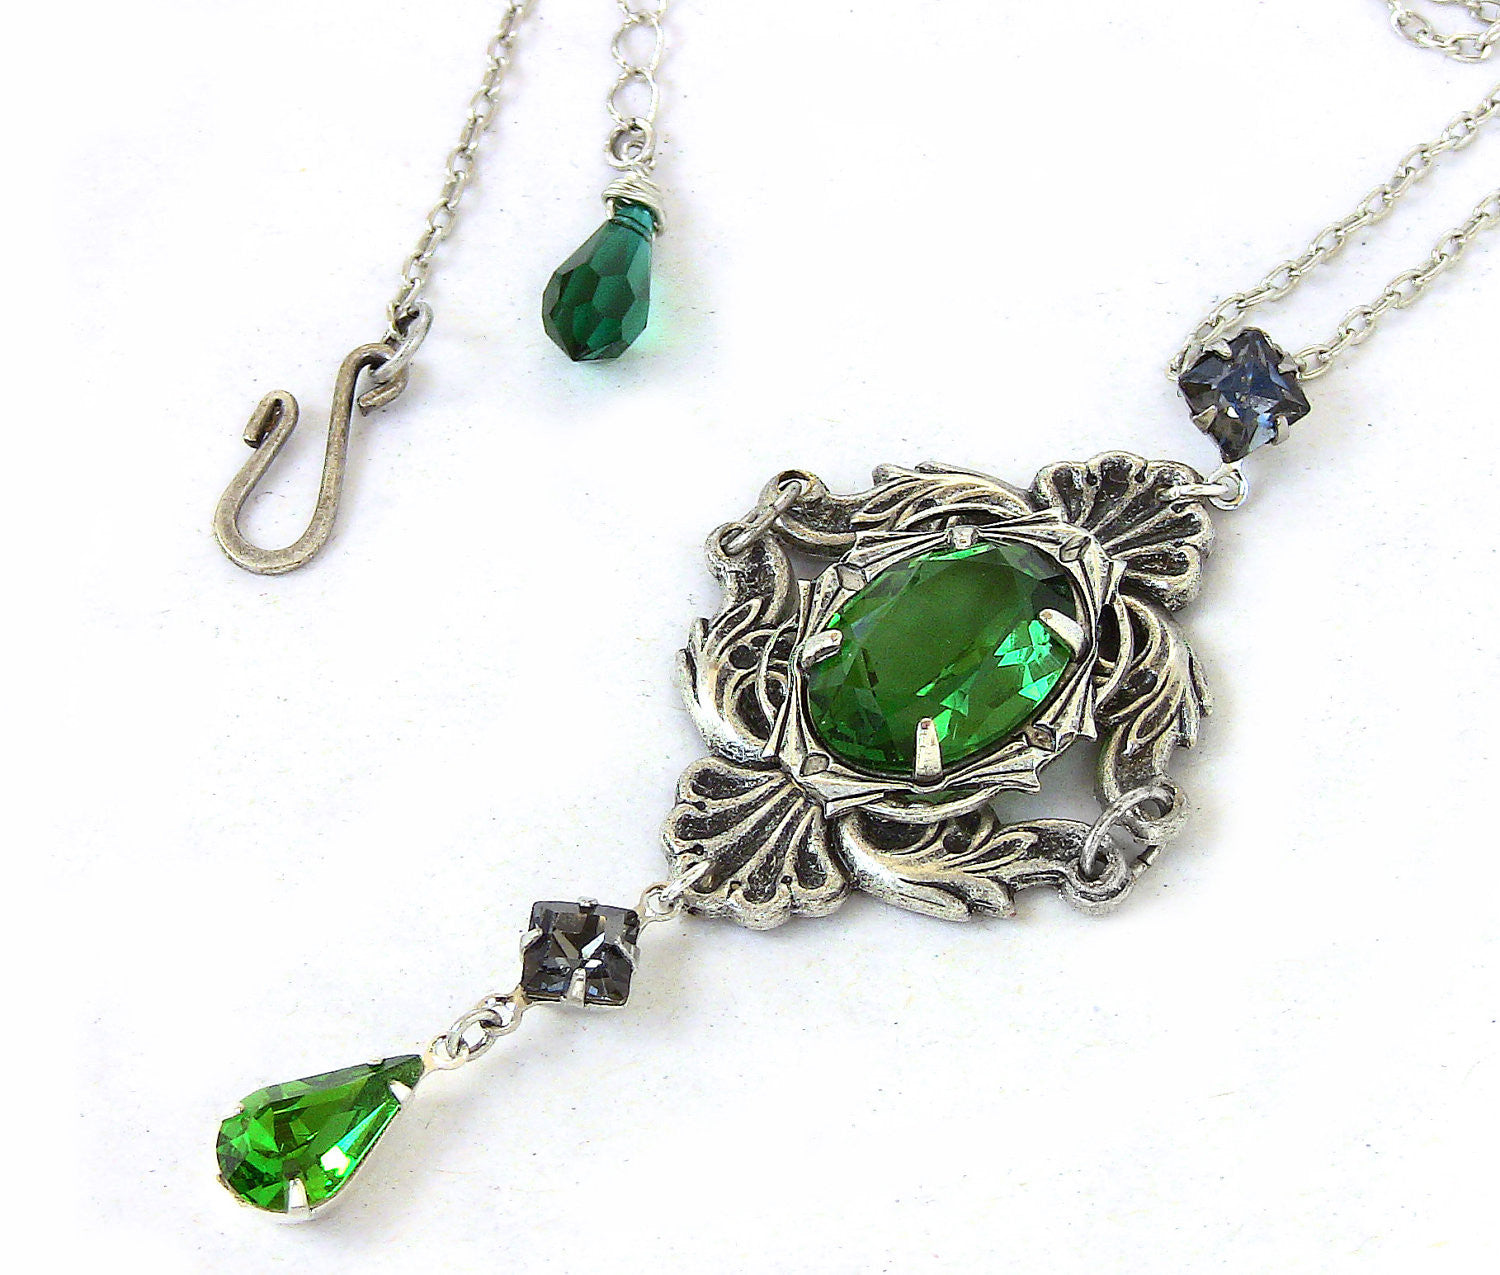 Green Gothic Necklace with Swarovski Crystal Rhinestones - Aranwen's Jewelry
 - 4